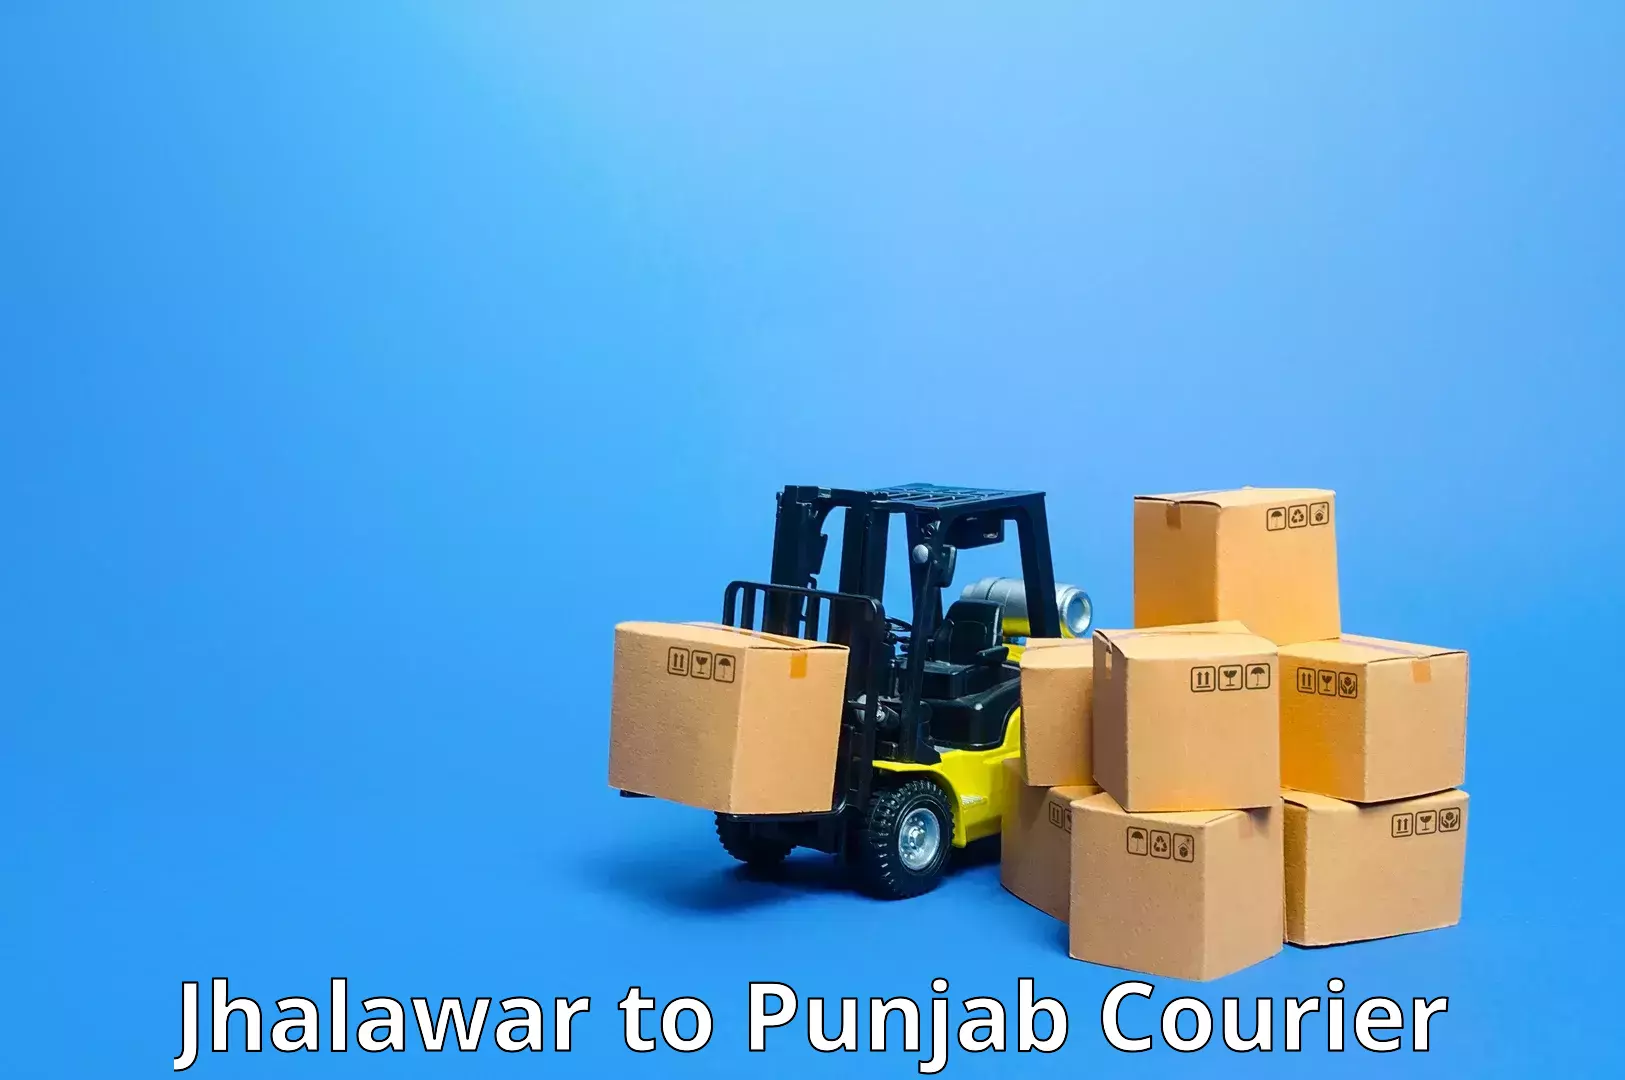 Expedited shipping methods Jhalawar to Talwara